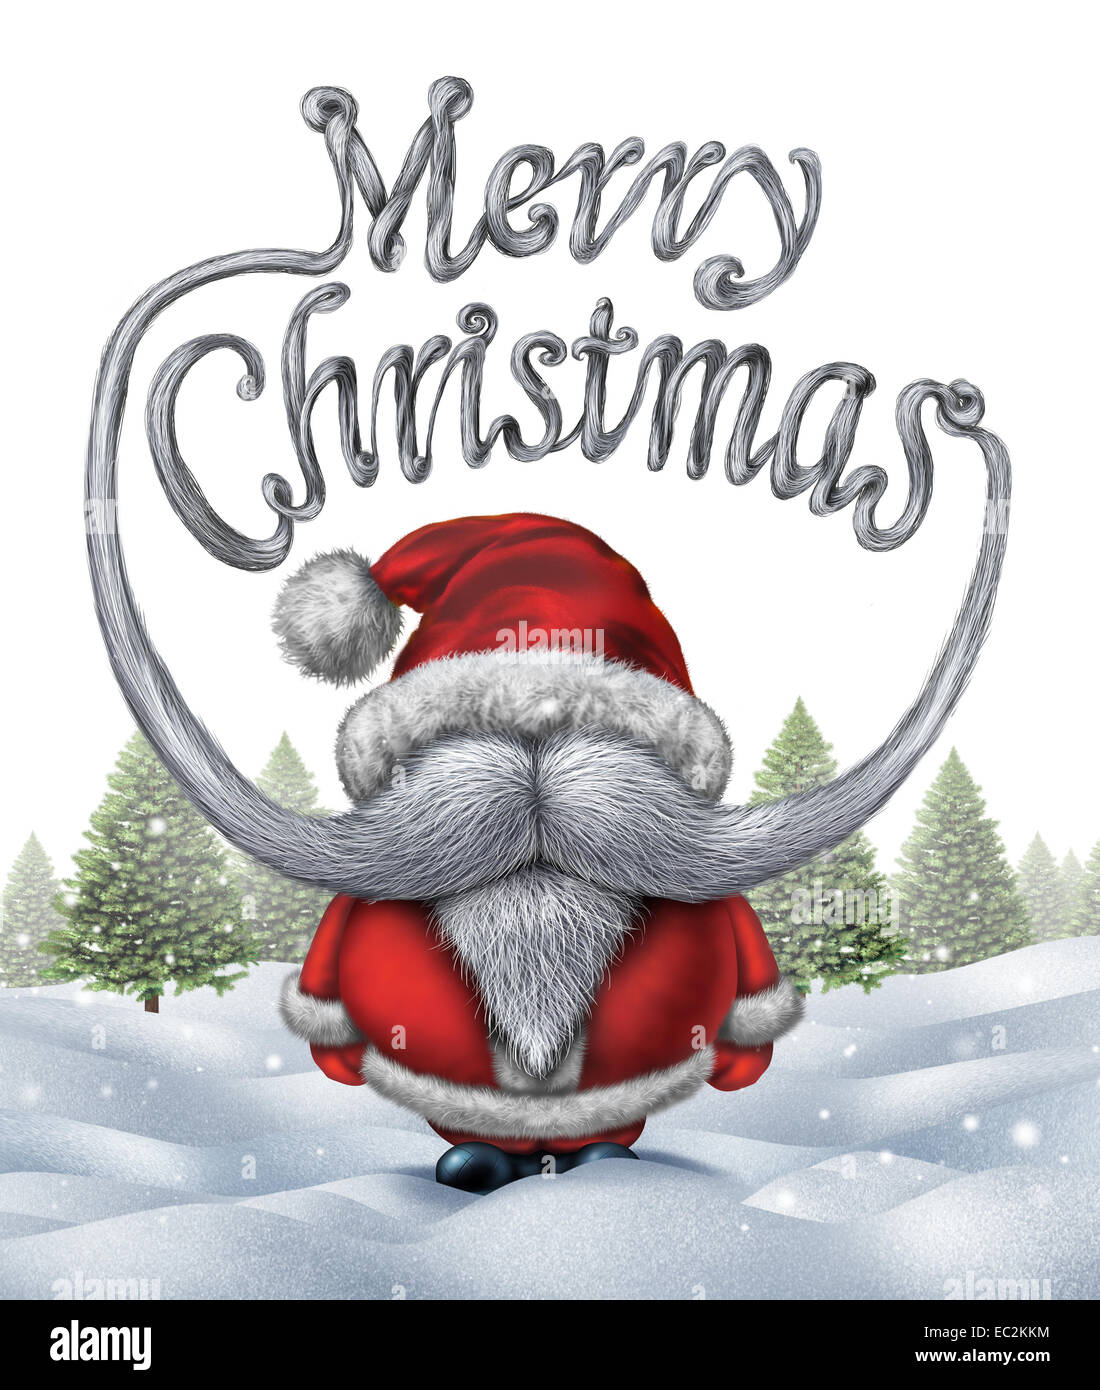 Frohe Weihnachten Santa Klausel Inschrift als eine lustige Weihnachtsmann mit weißem Bart und Schnurrbart als festliche Winter Urlaub Typografie Text auf Schnee Hintergrund mit Pinien geformt. Stockfoto